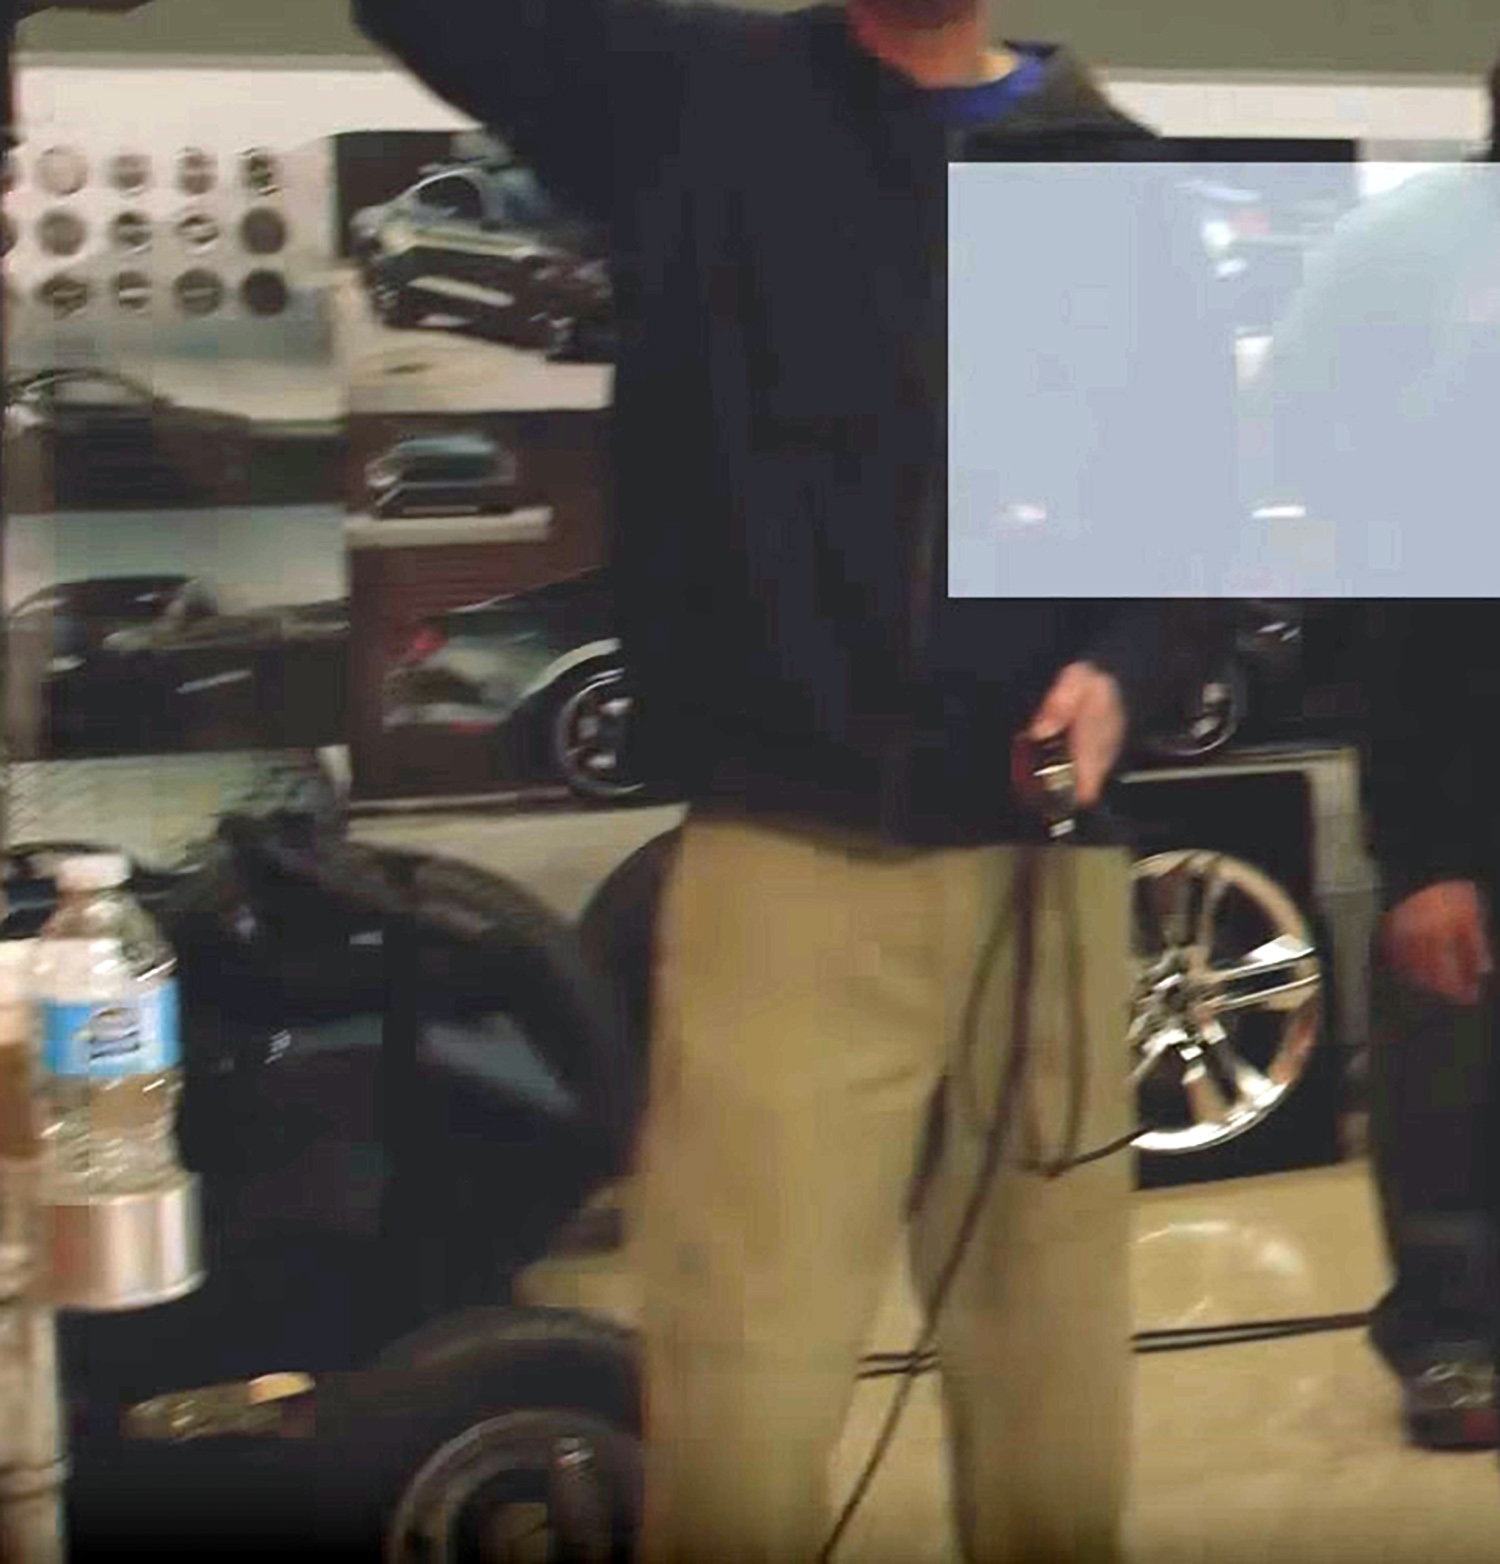 První snímky předpokládaného Fordu Mustang Bullit se objevily ve videu mapujícím natáčené reklamního spotu pro Ford